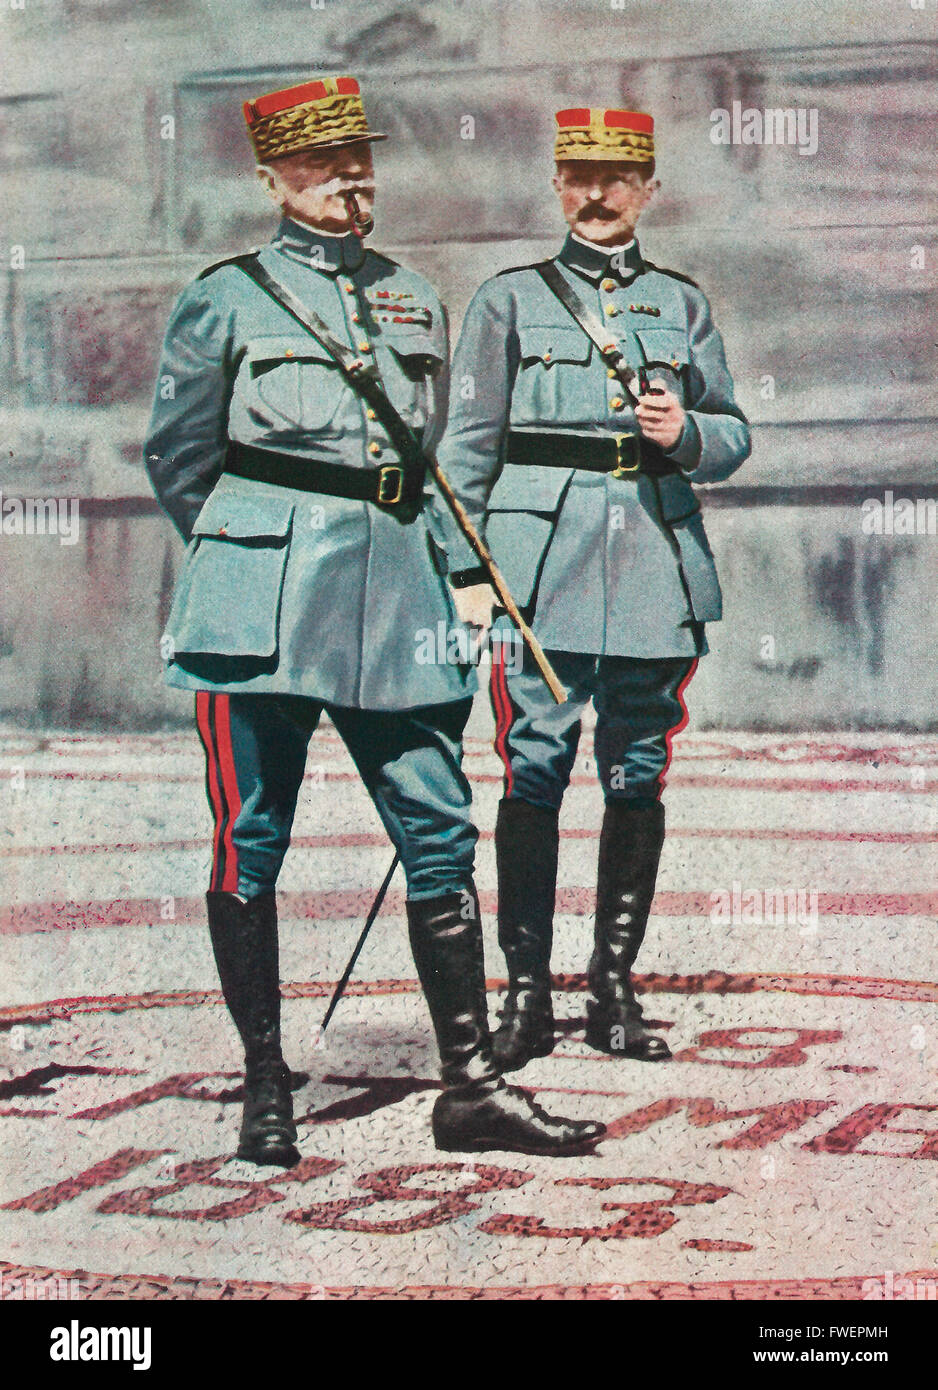 Le maréchal Foch et le général Weygand, chefs militaires français dans la Première Guerre mondiale Banque D'Images